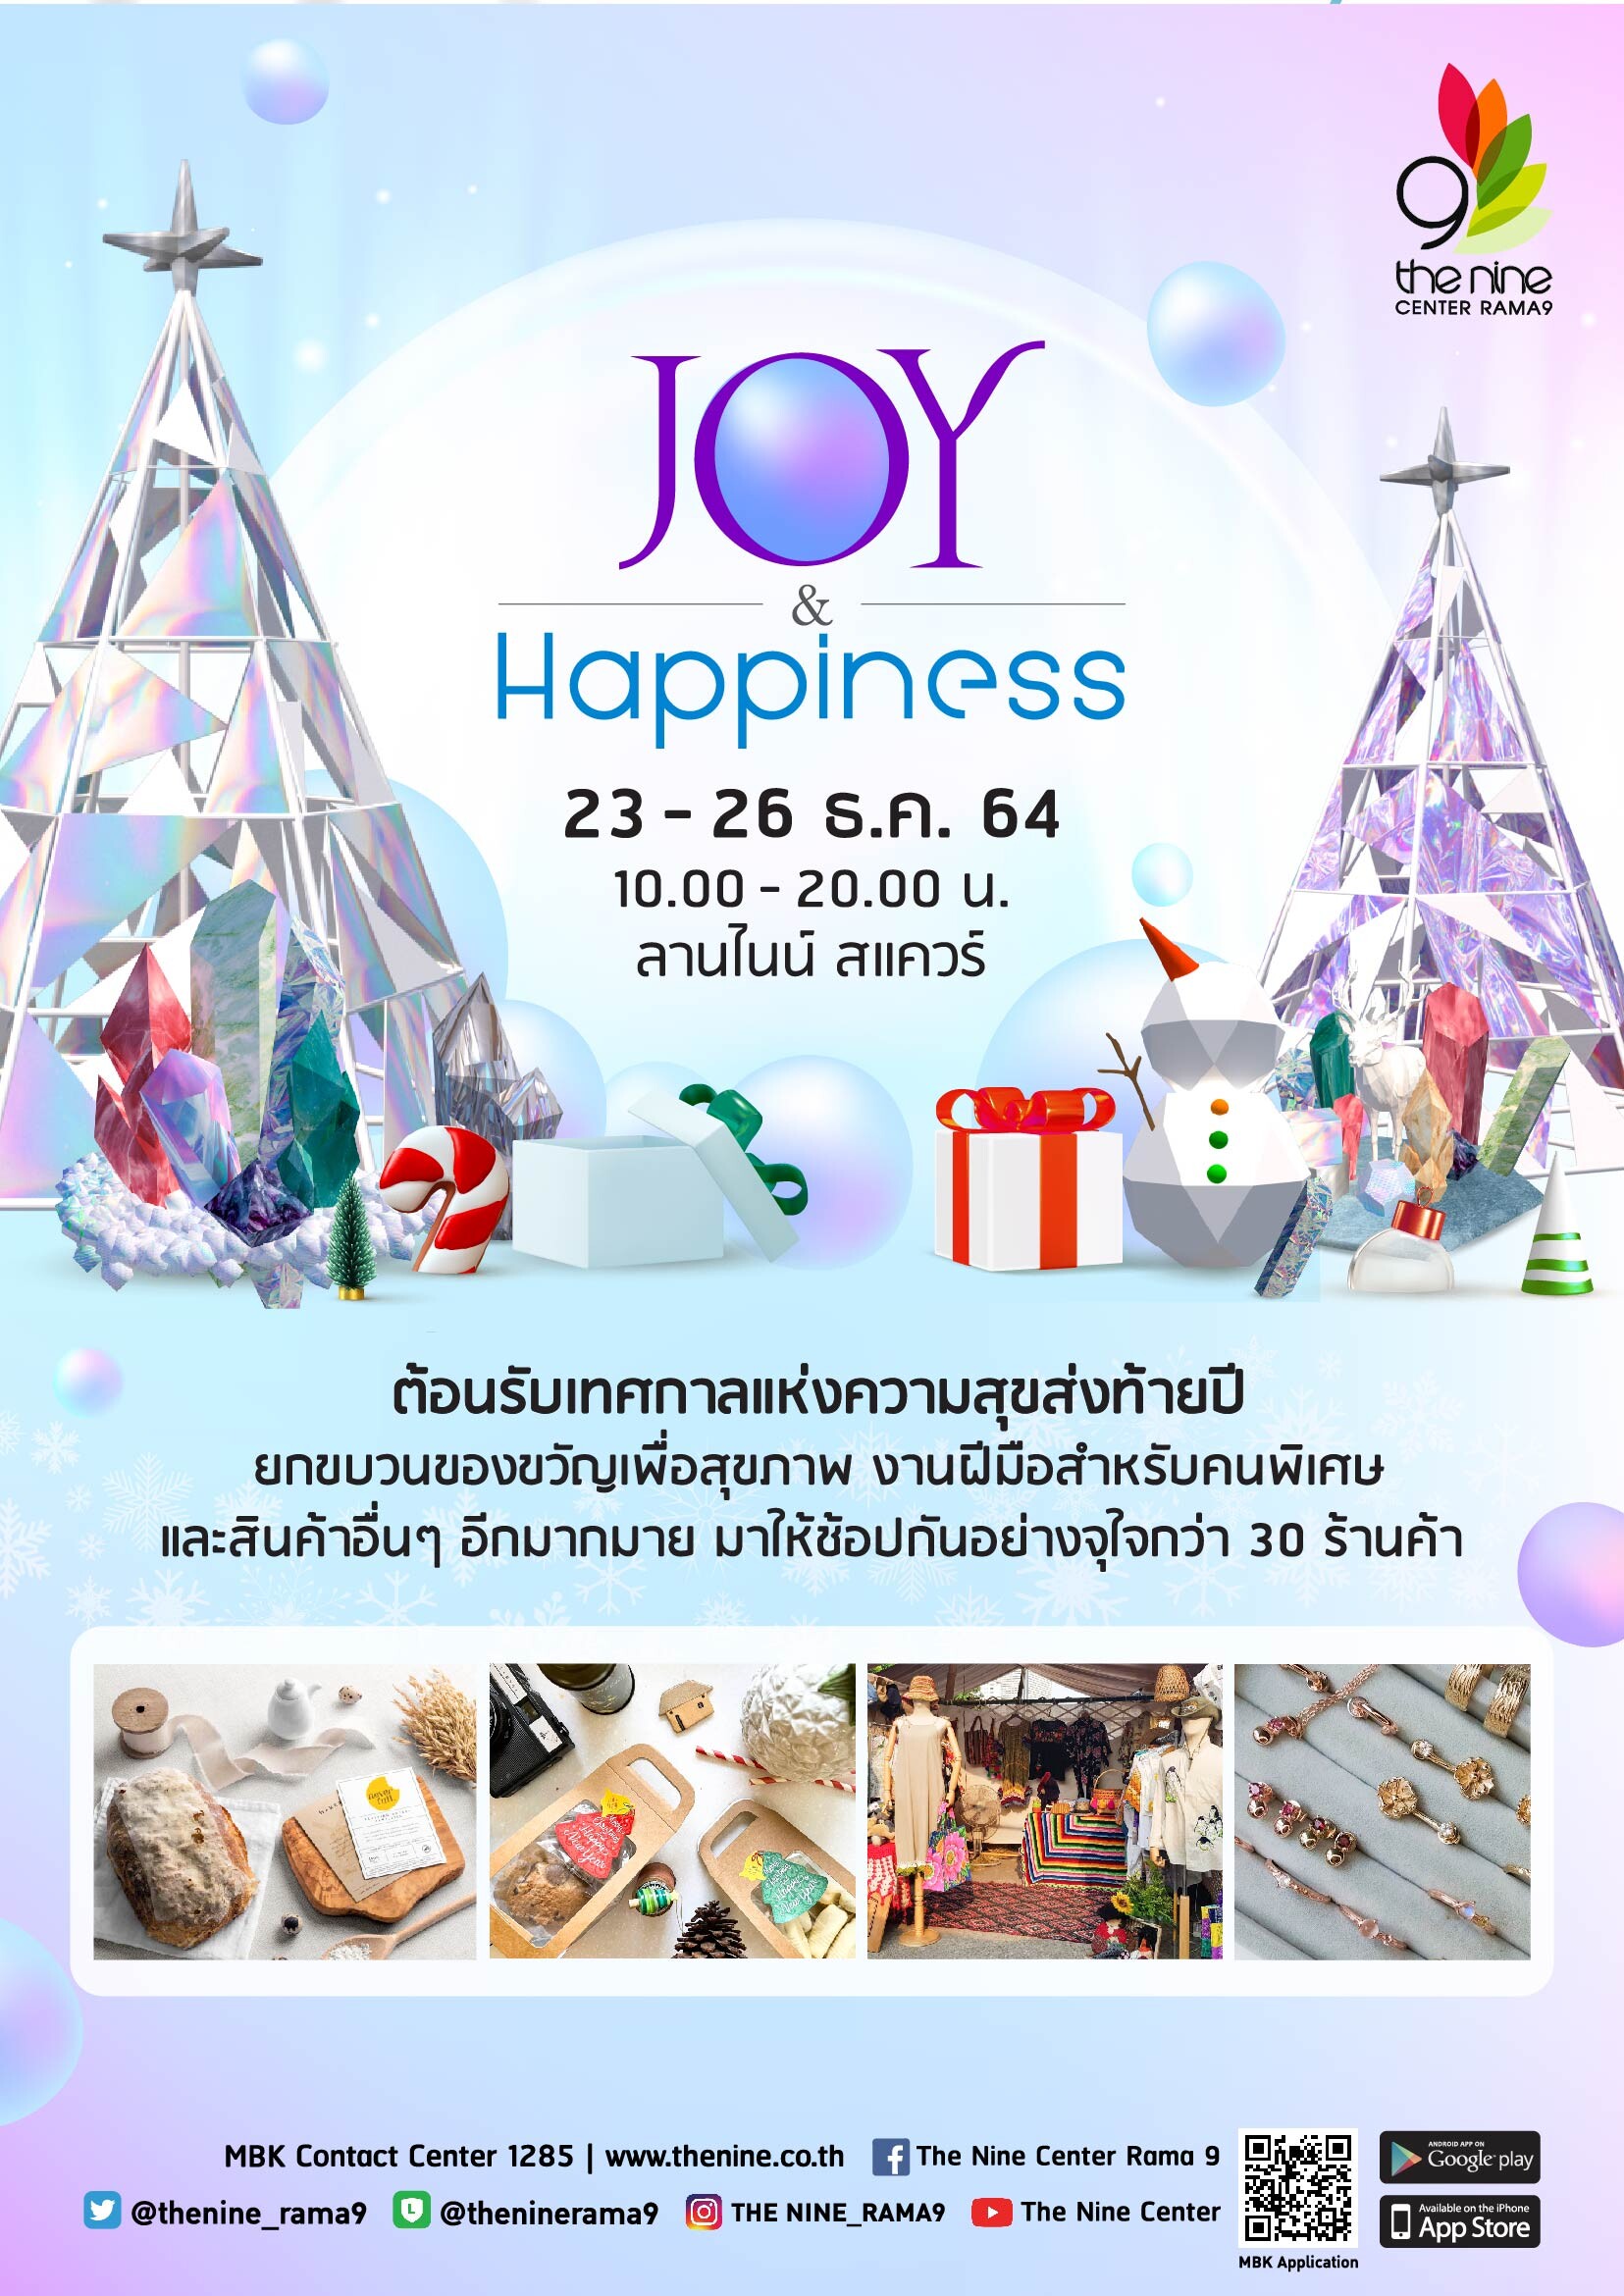 เดอะไนน์ เซ็นเตอร์ พระราม 9 เปิดเทศกาลของขวัญปีใหม่ ต้อนรับเทศกาลแห่งความสุขในงาน Joy & Happiness